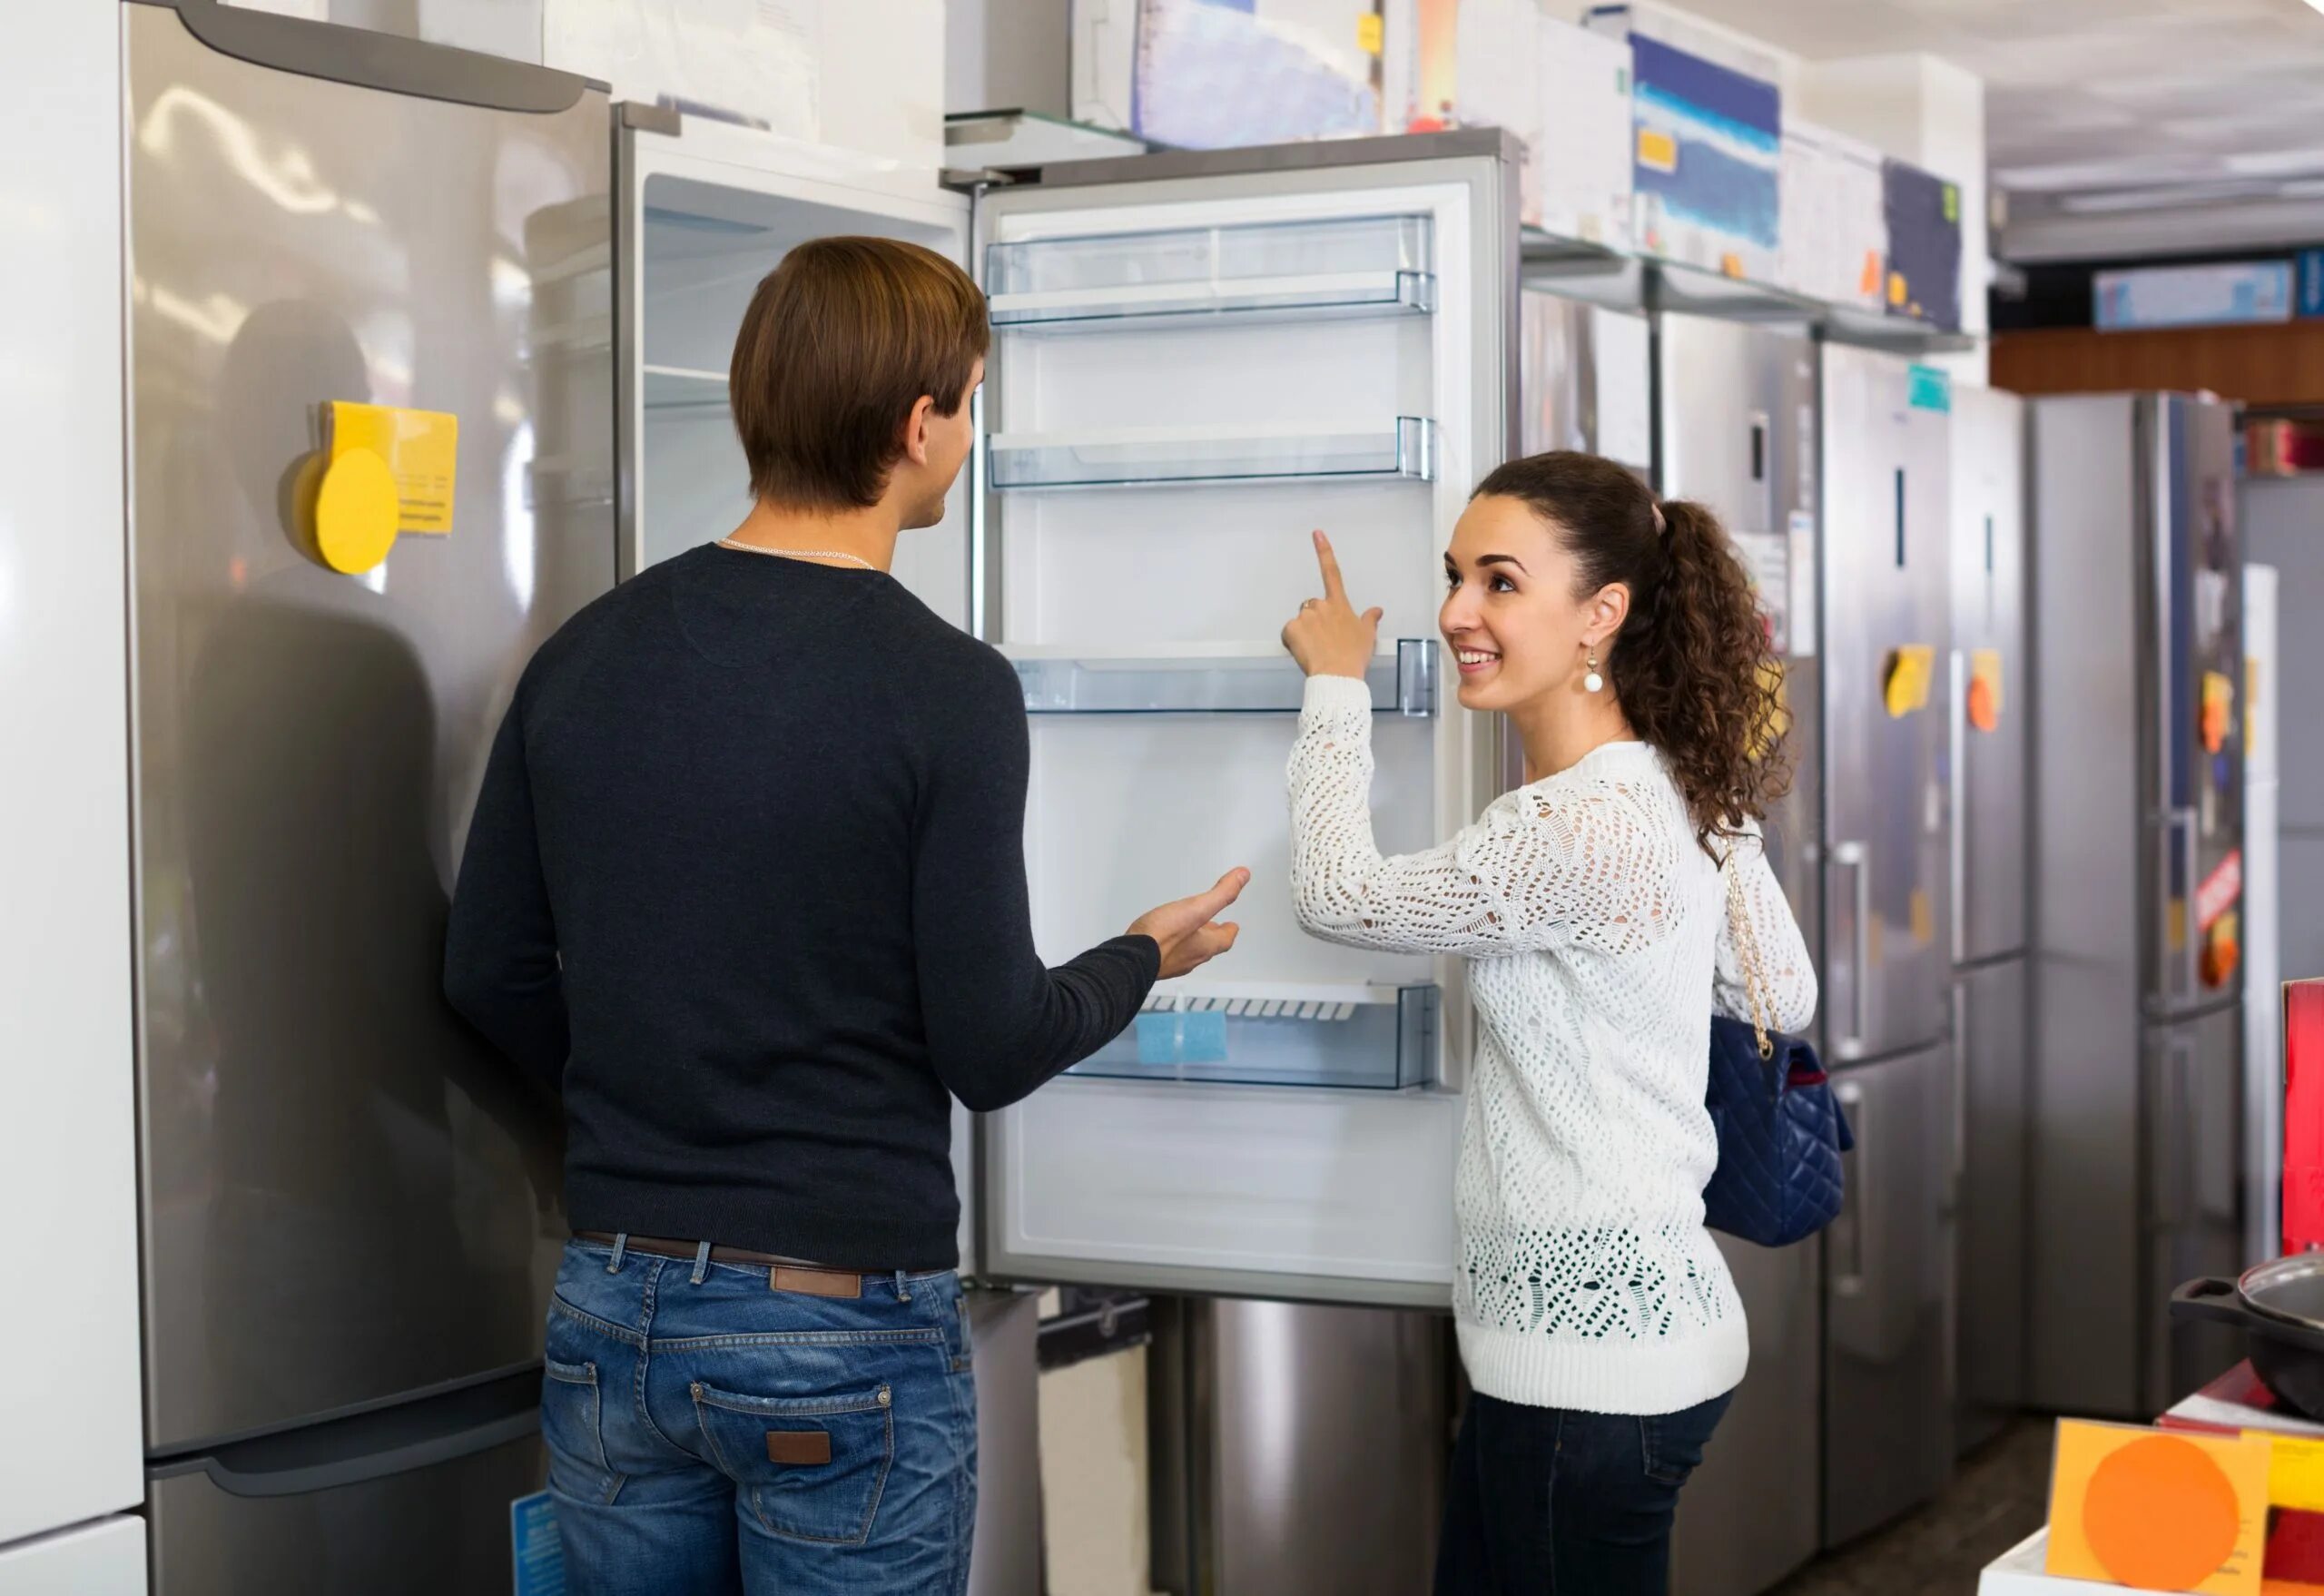 Включи купил новый. Новый холодильник. Семейный холодильник. Выбор холодильника. Современные холодильники.